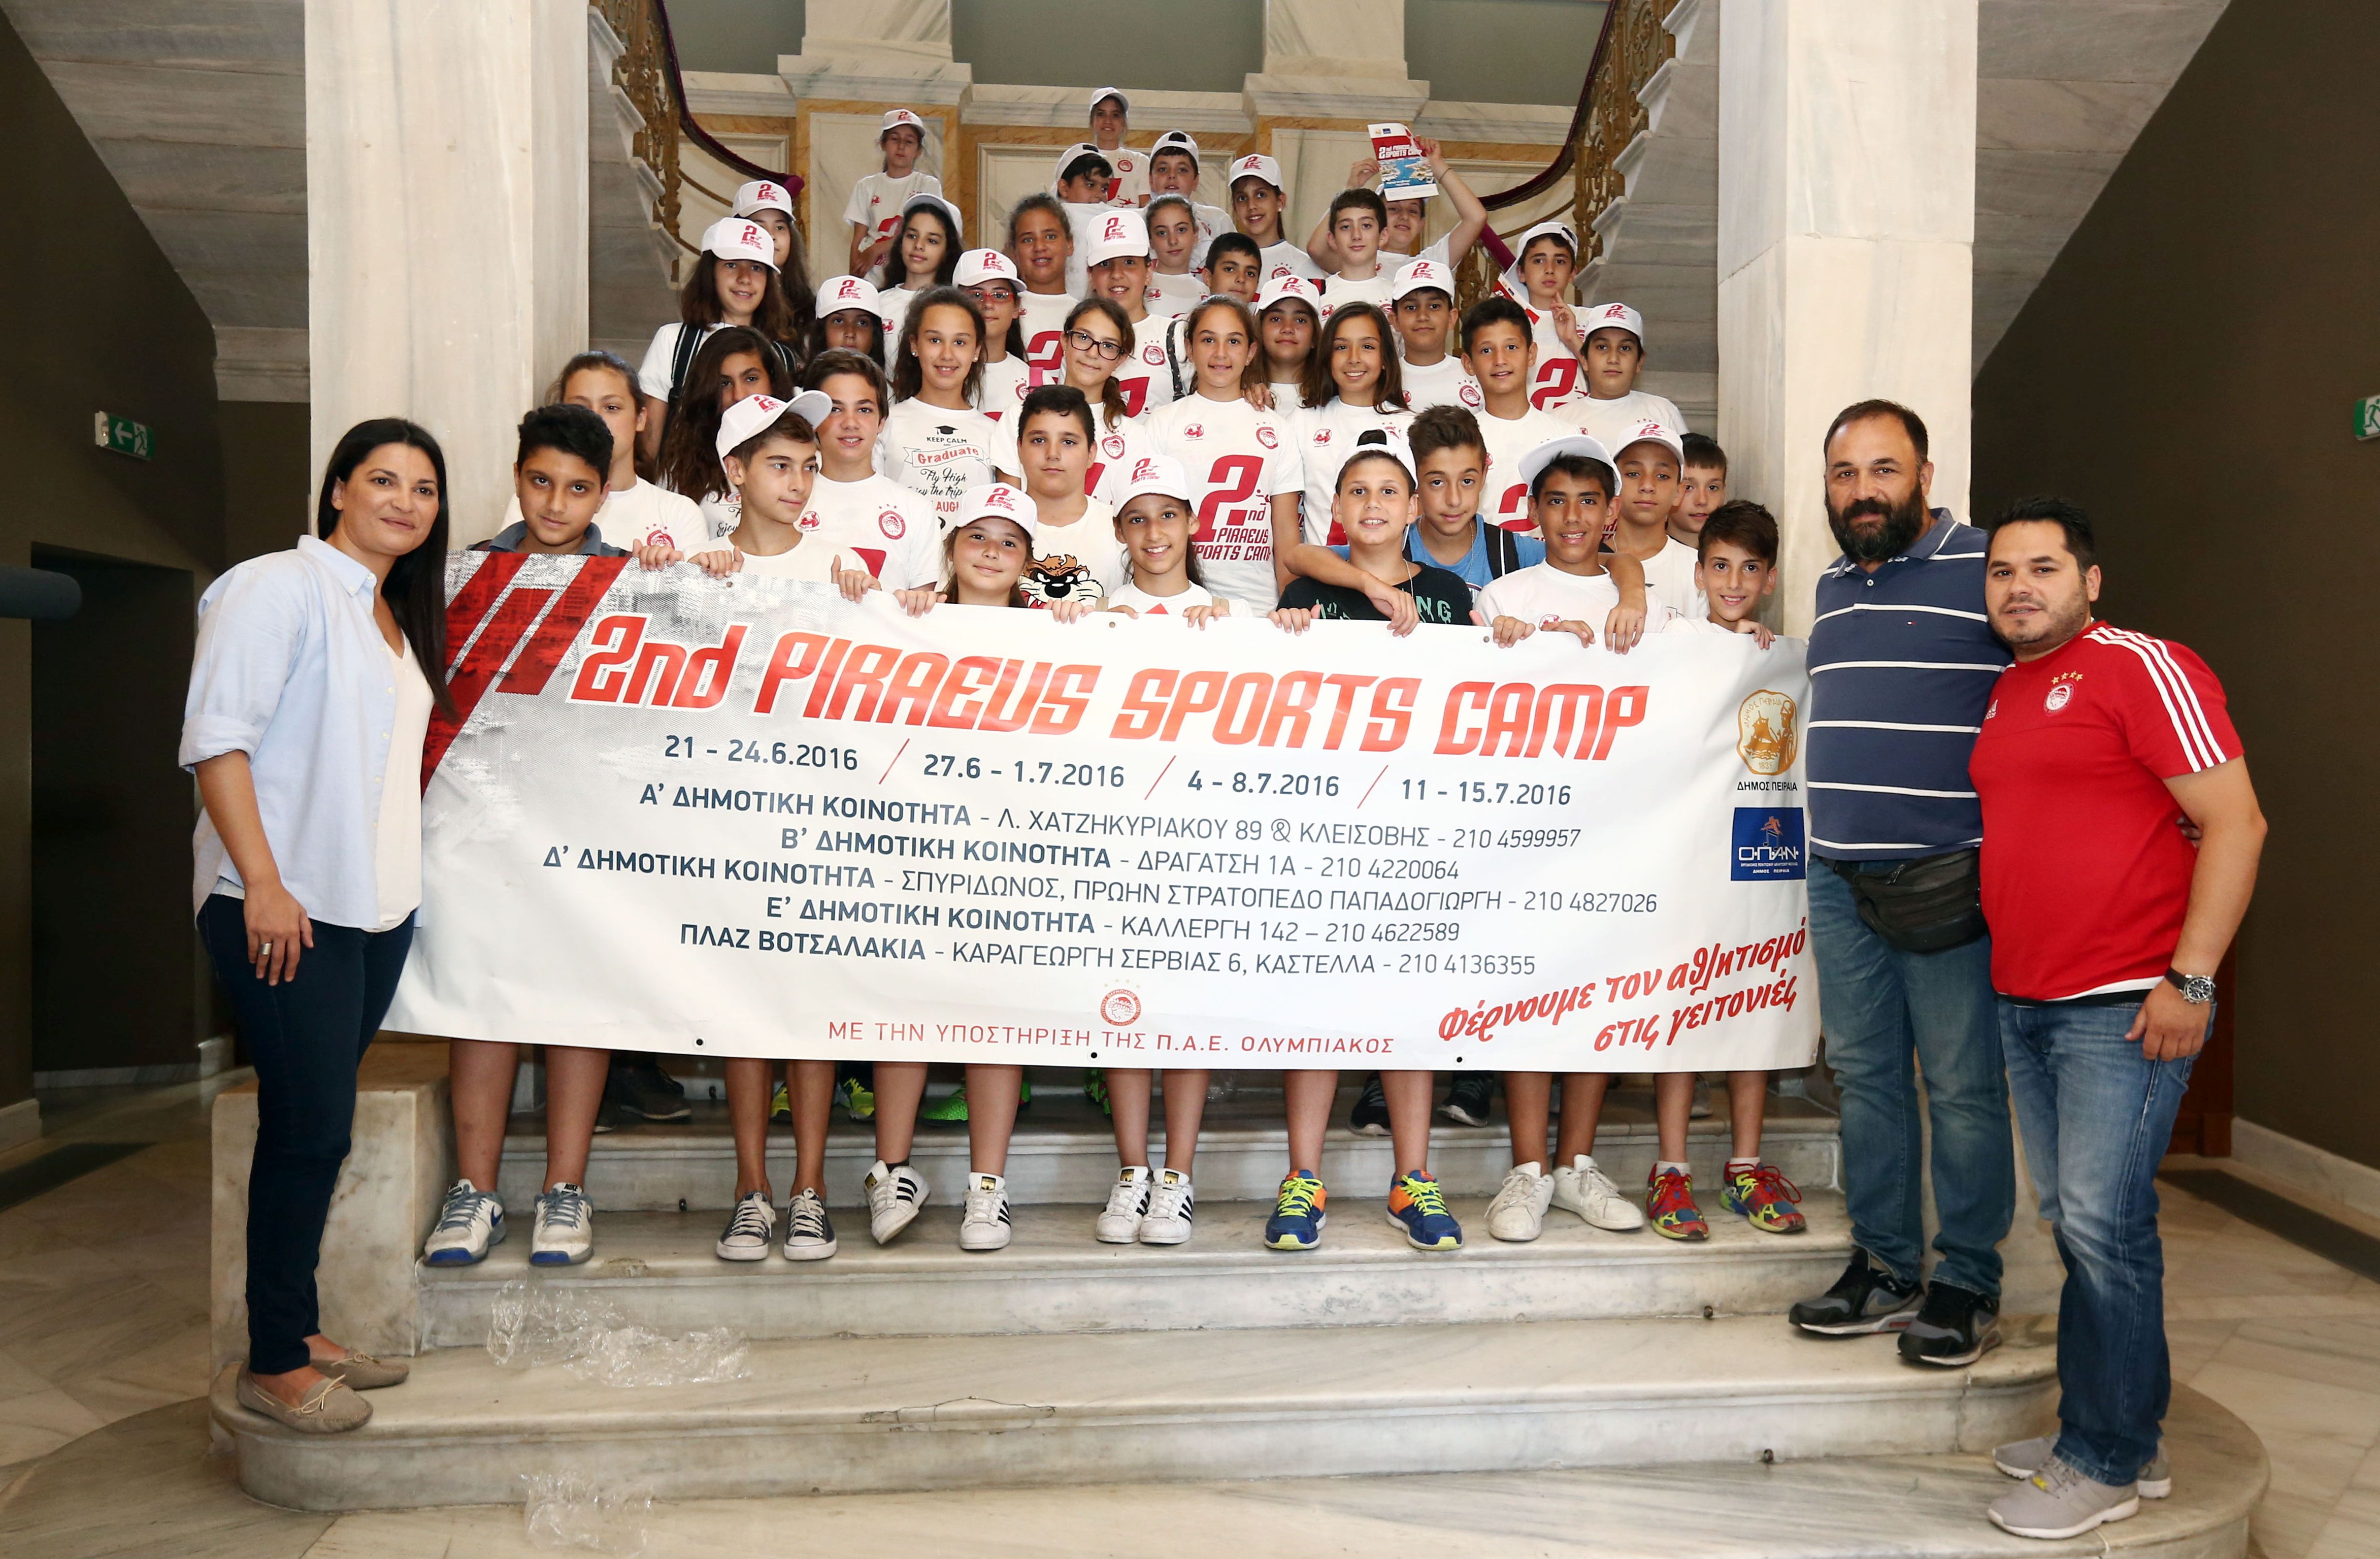 Παρουσιάστηκε το 2ο Piraeus Sports Camp!